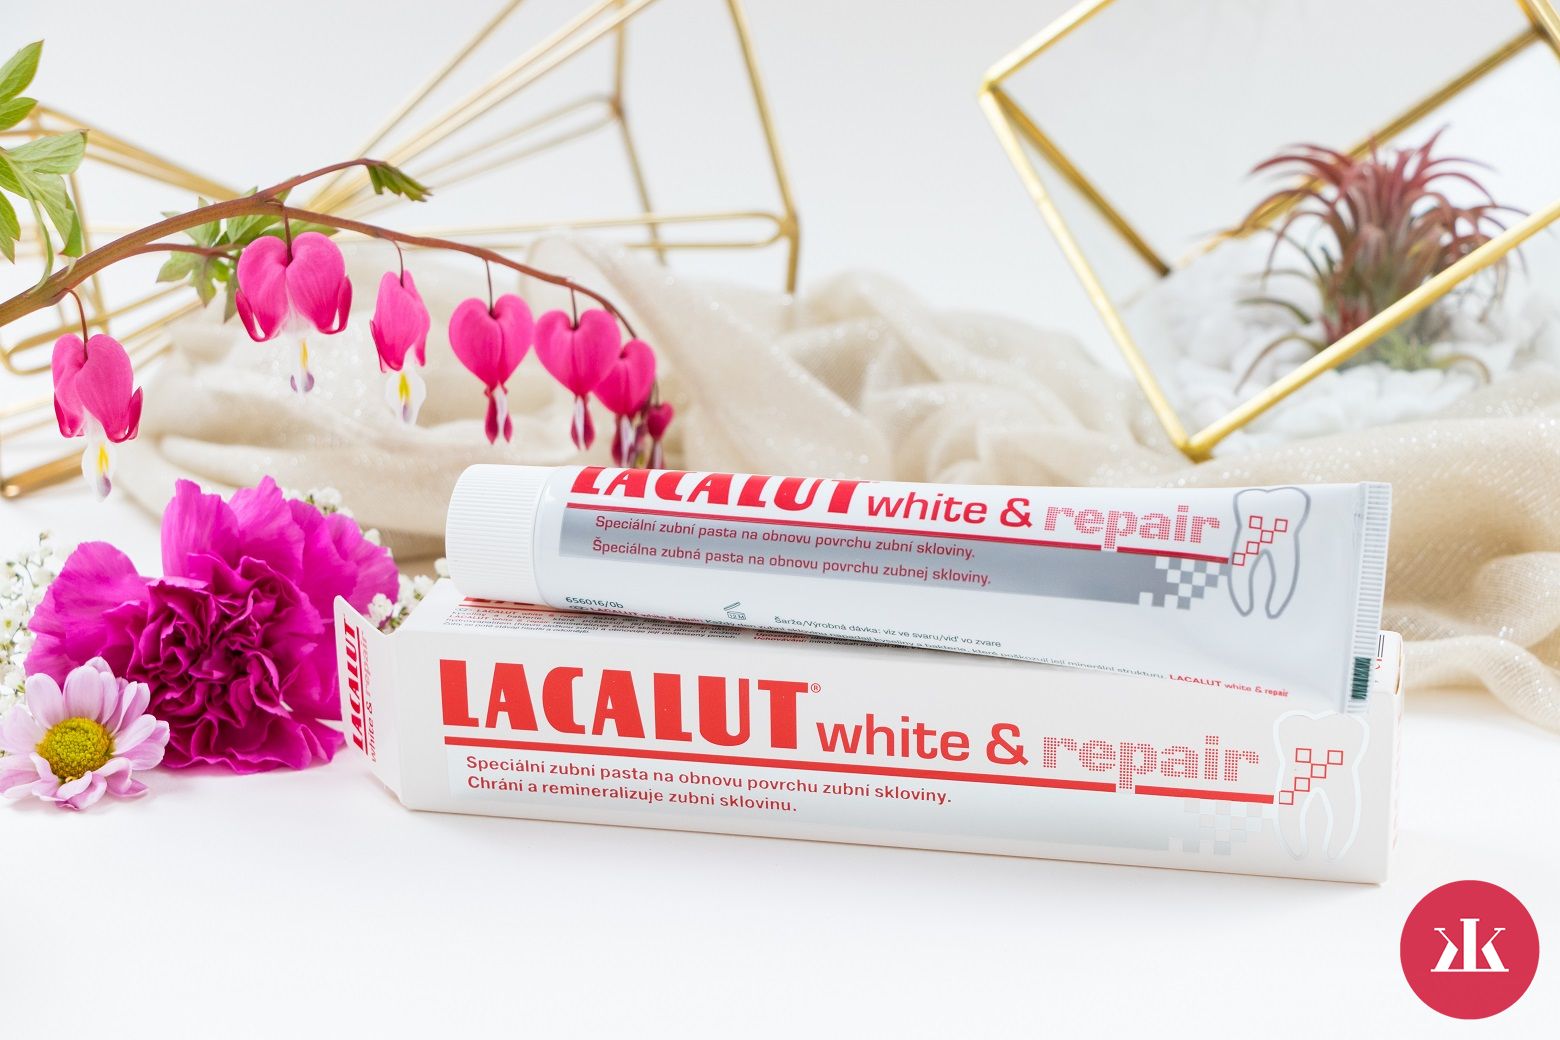 Lacalut white & repair